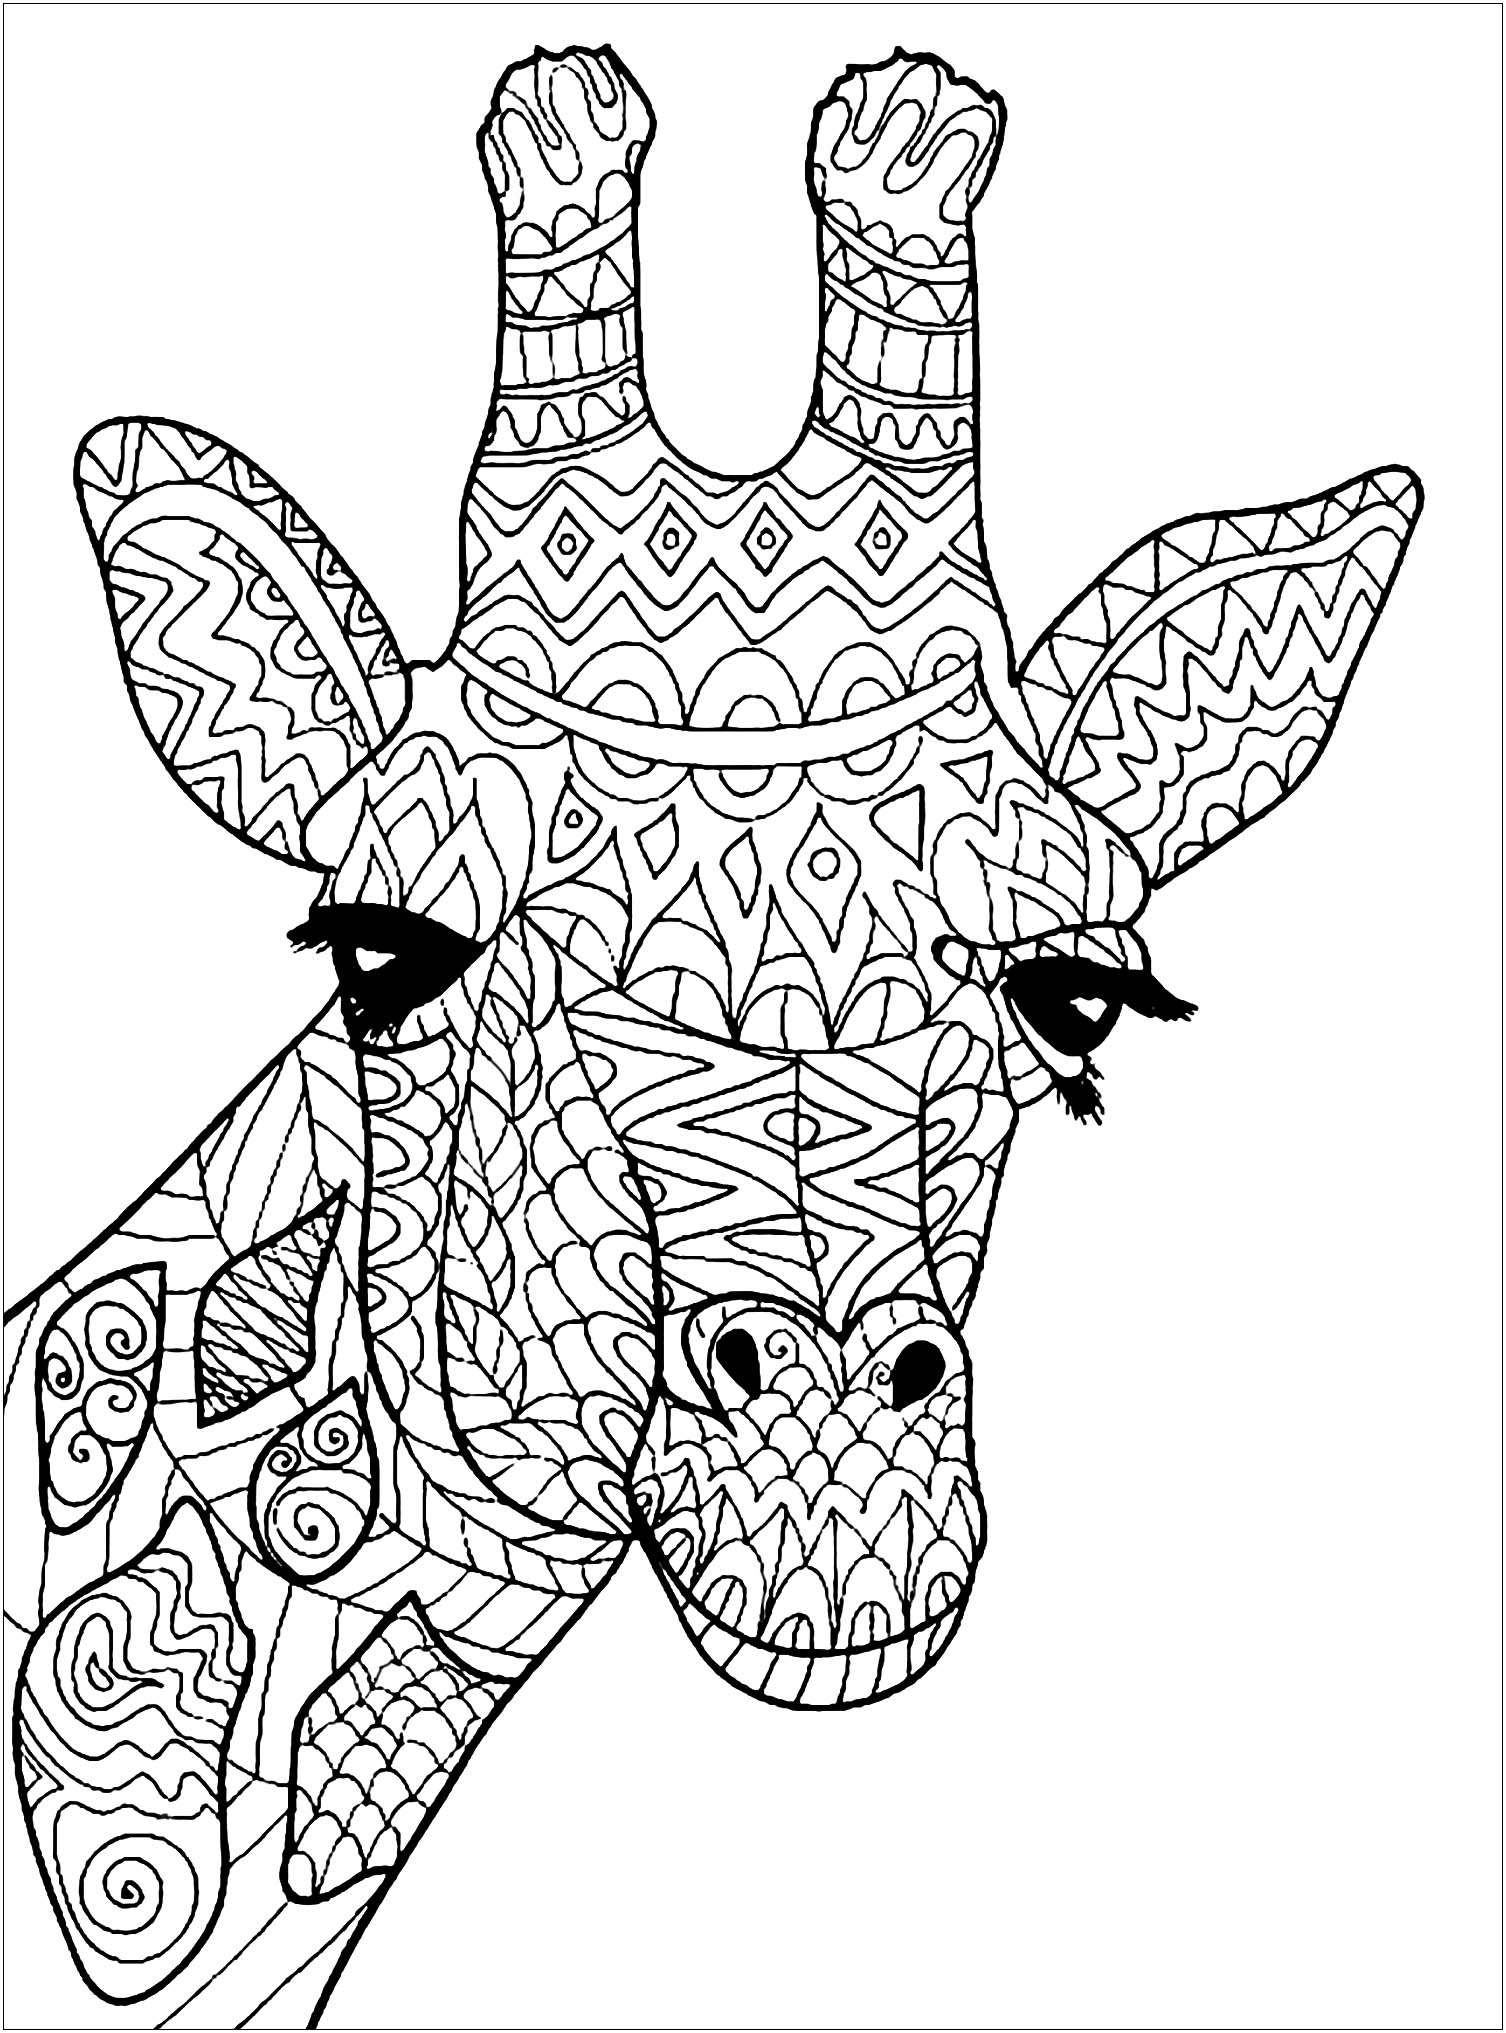 Colorir esta bela cabeça de Girafa com padrões engraçados